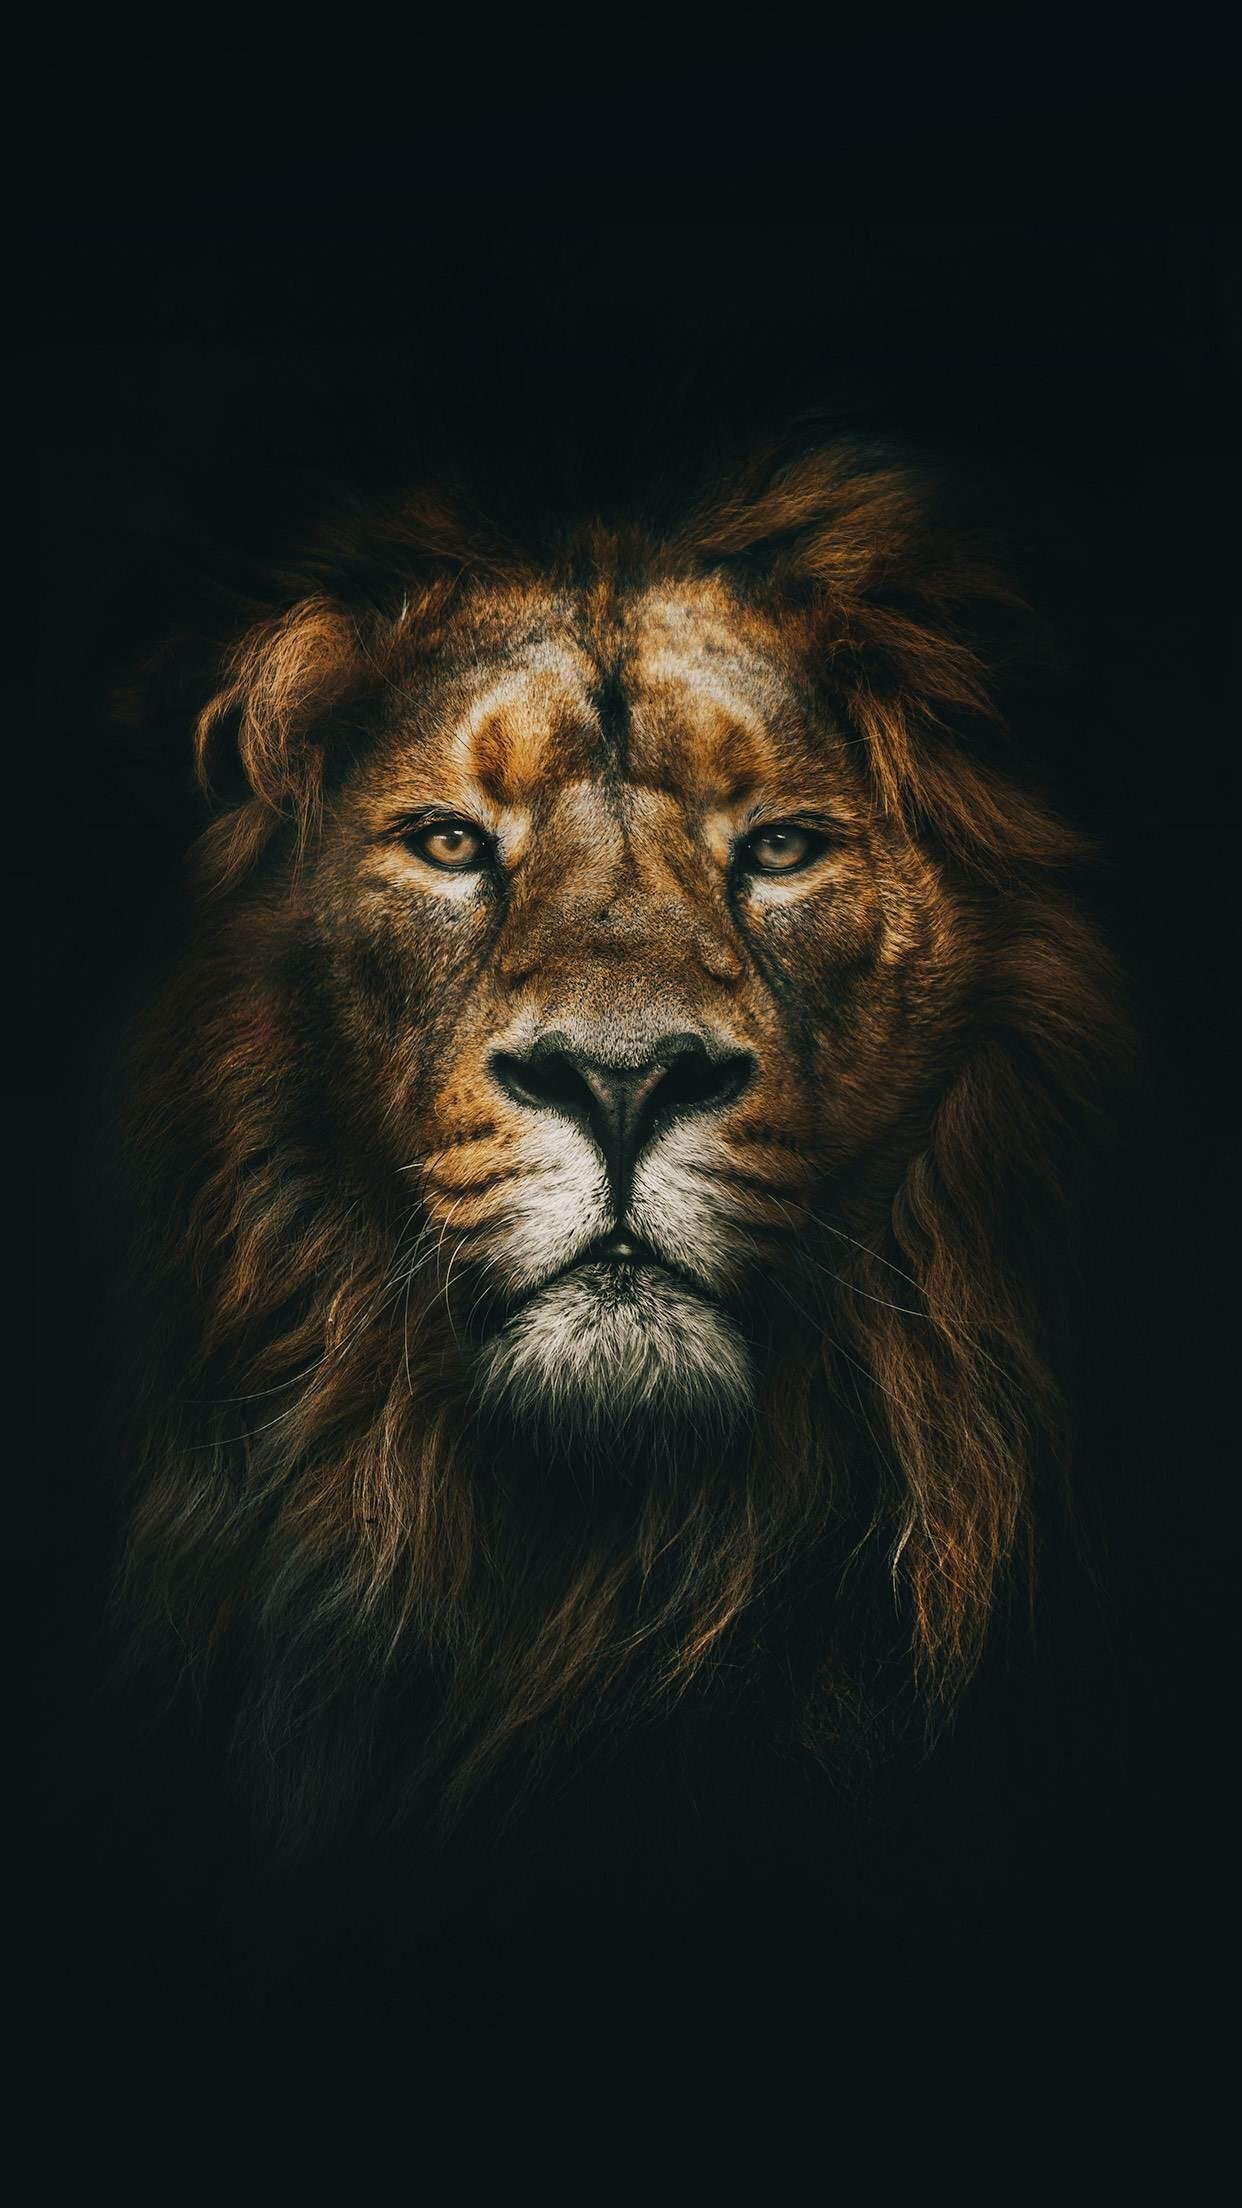 Lion Galaxy Wallpapers - Top Những Hình Ảnh Đẹp